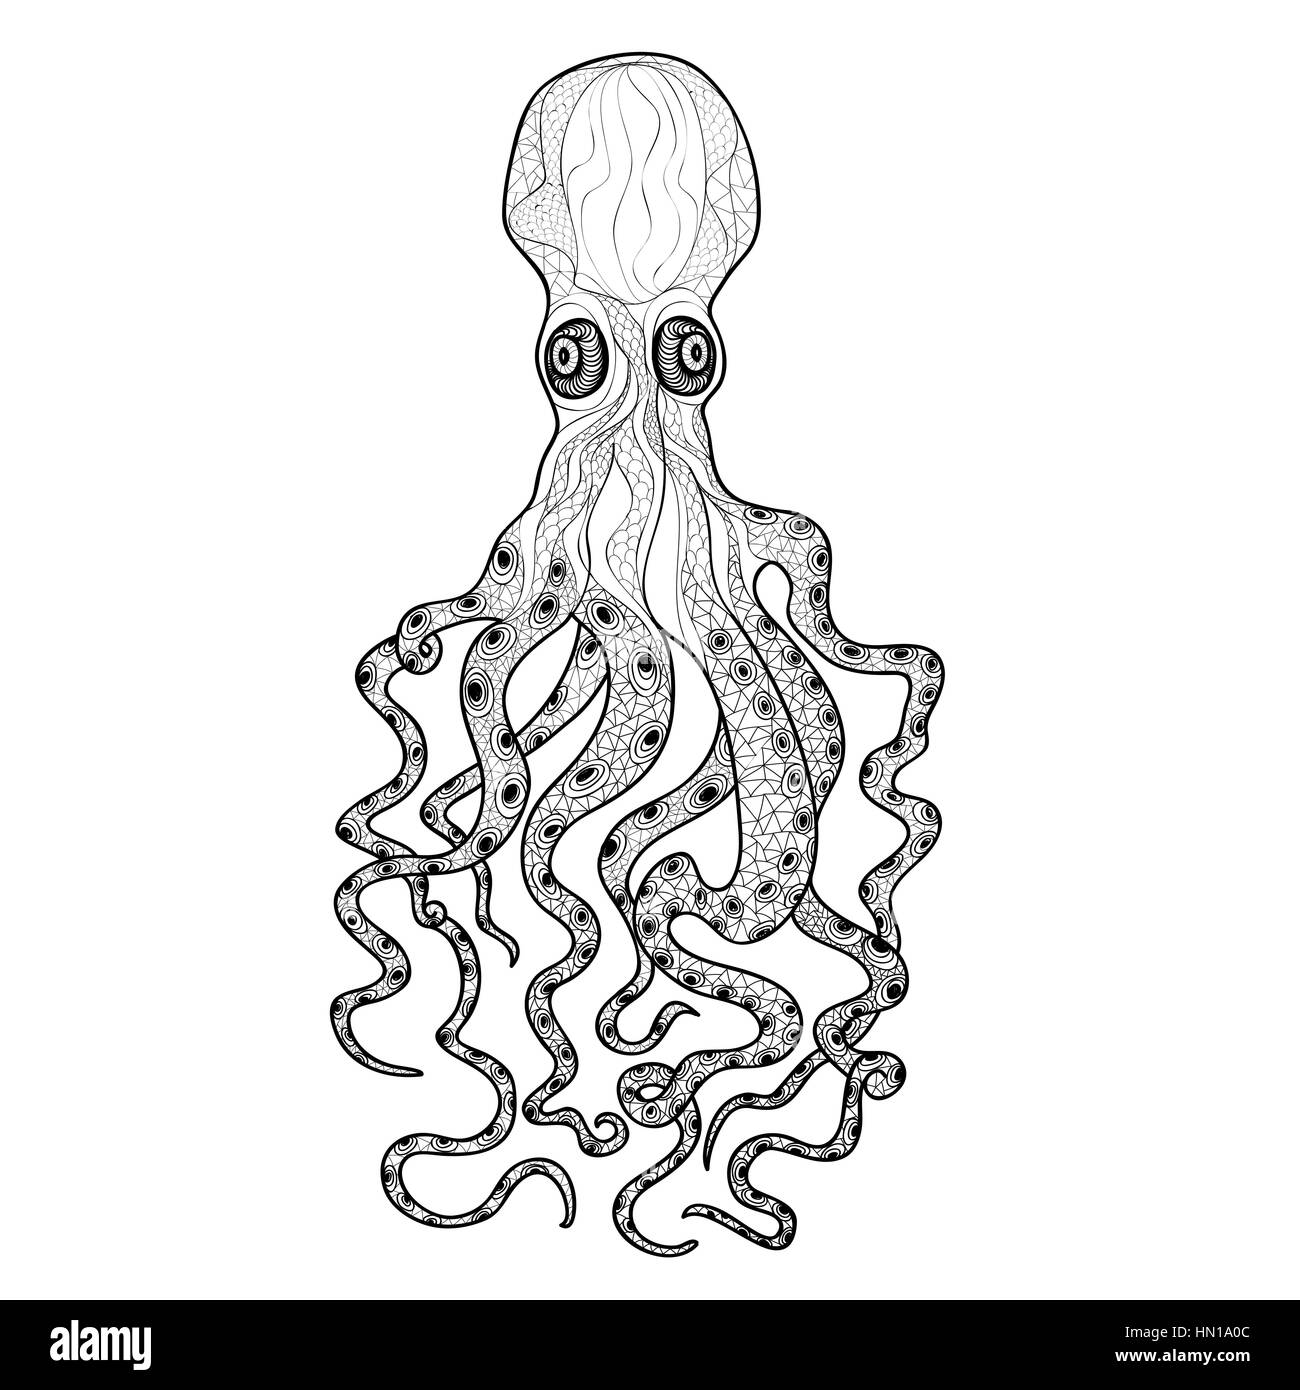 À motifs octopus. animal monstre de mer objet ornement isolé sur fond blanc. sous l'élément de conception ornementale de fruits de mer Illustration de Vecteur